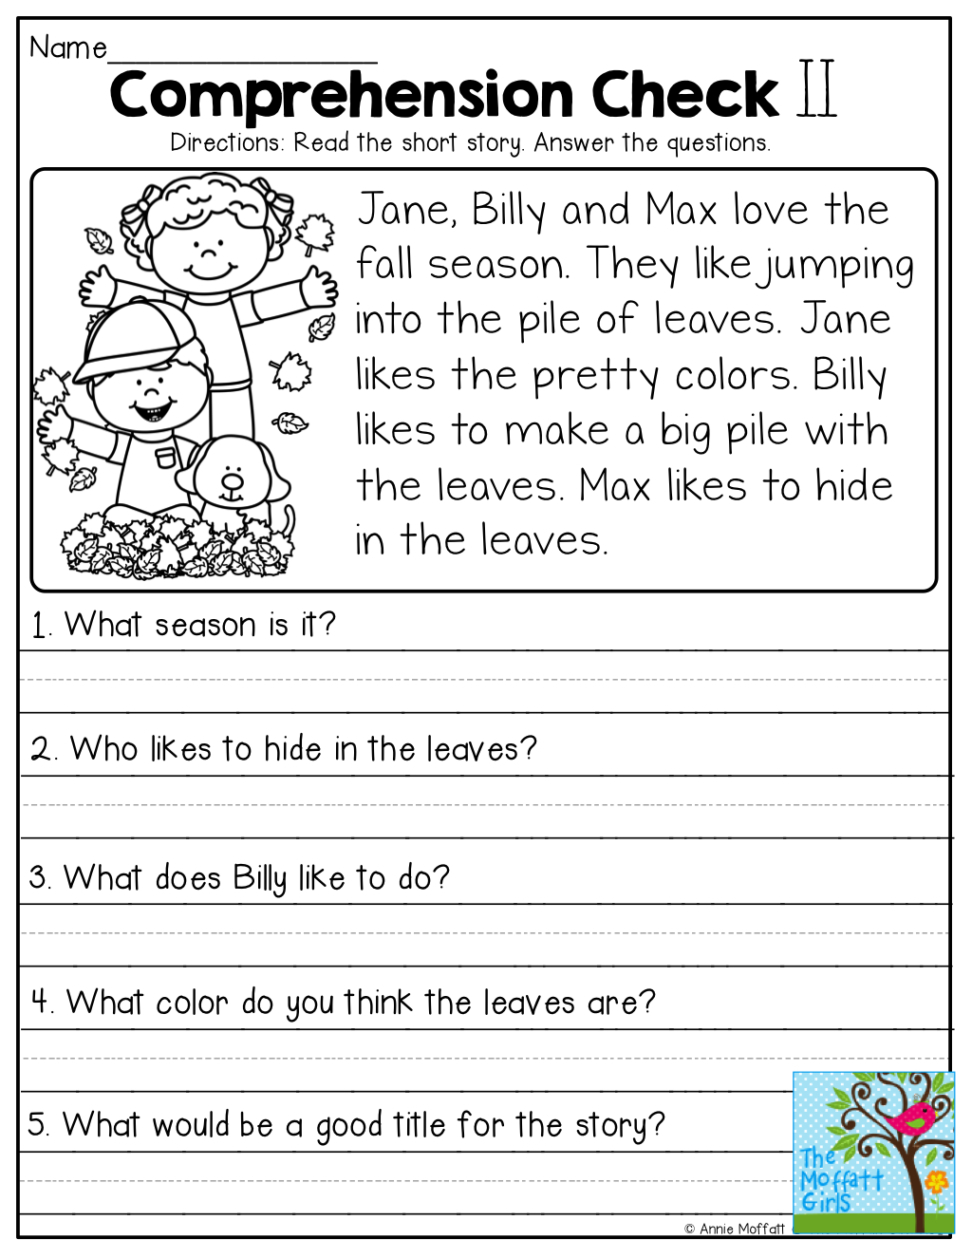 Worksheet. Free Printable Reading Comprehension Worksheets - Free | Free Printable Reading Comprehension Worksheets For Kindergarten